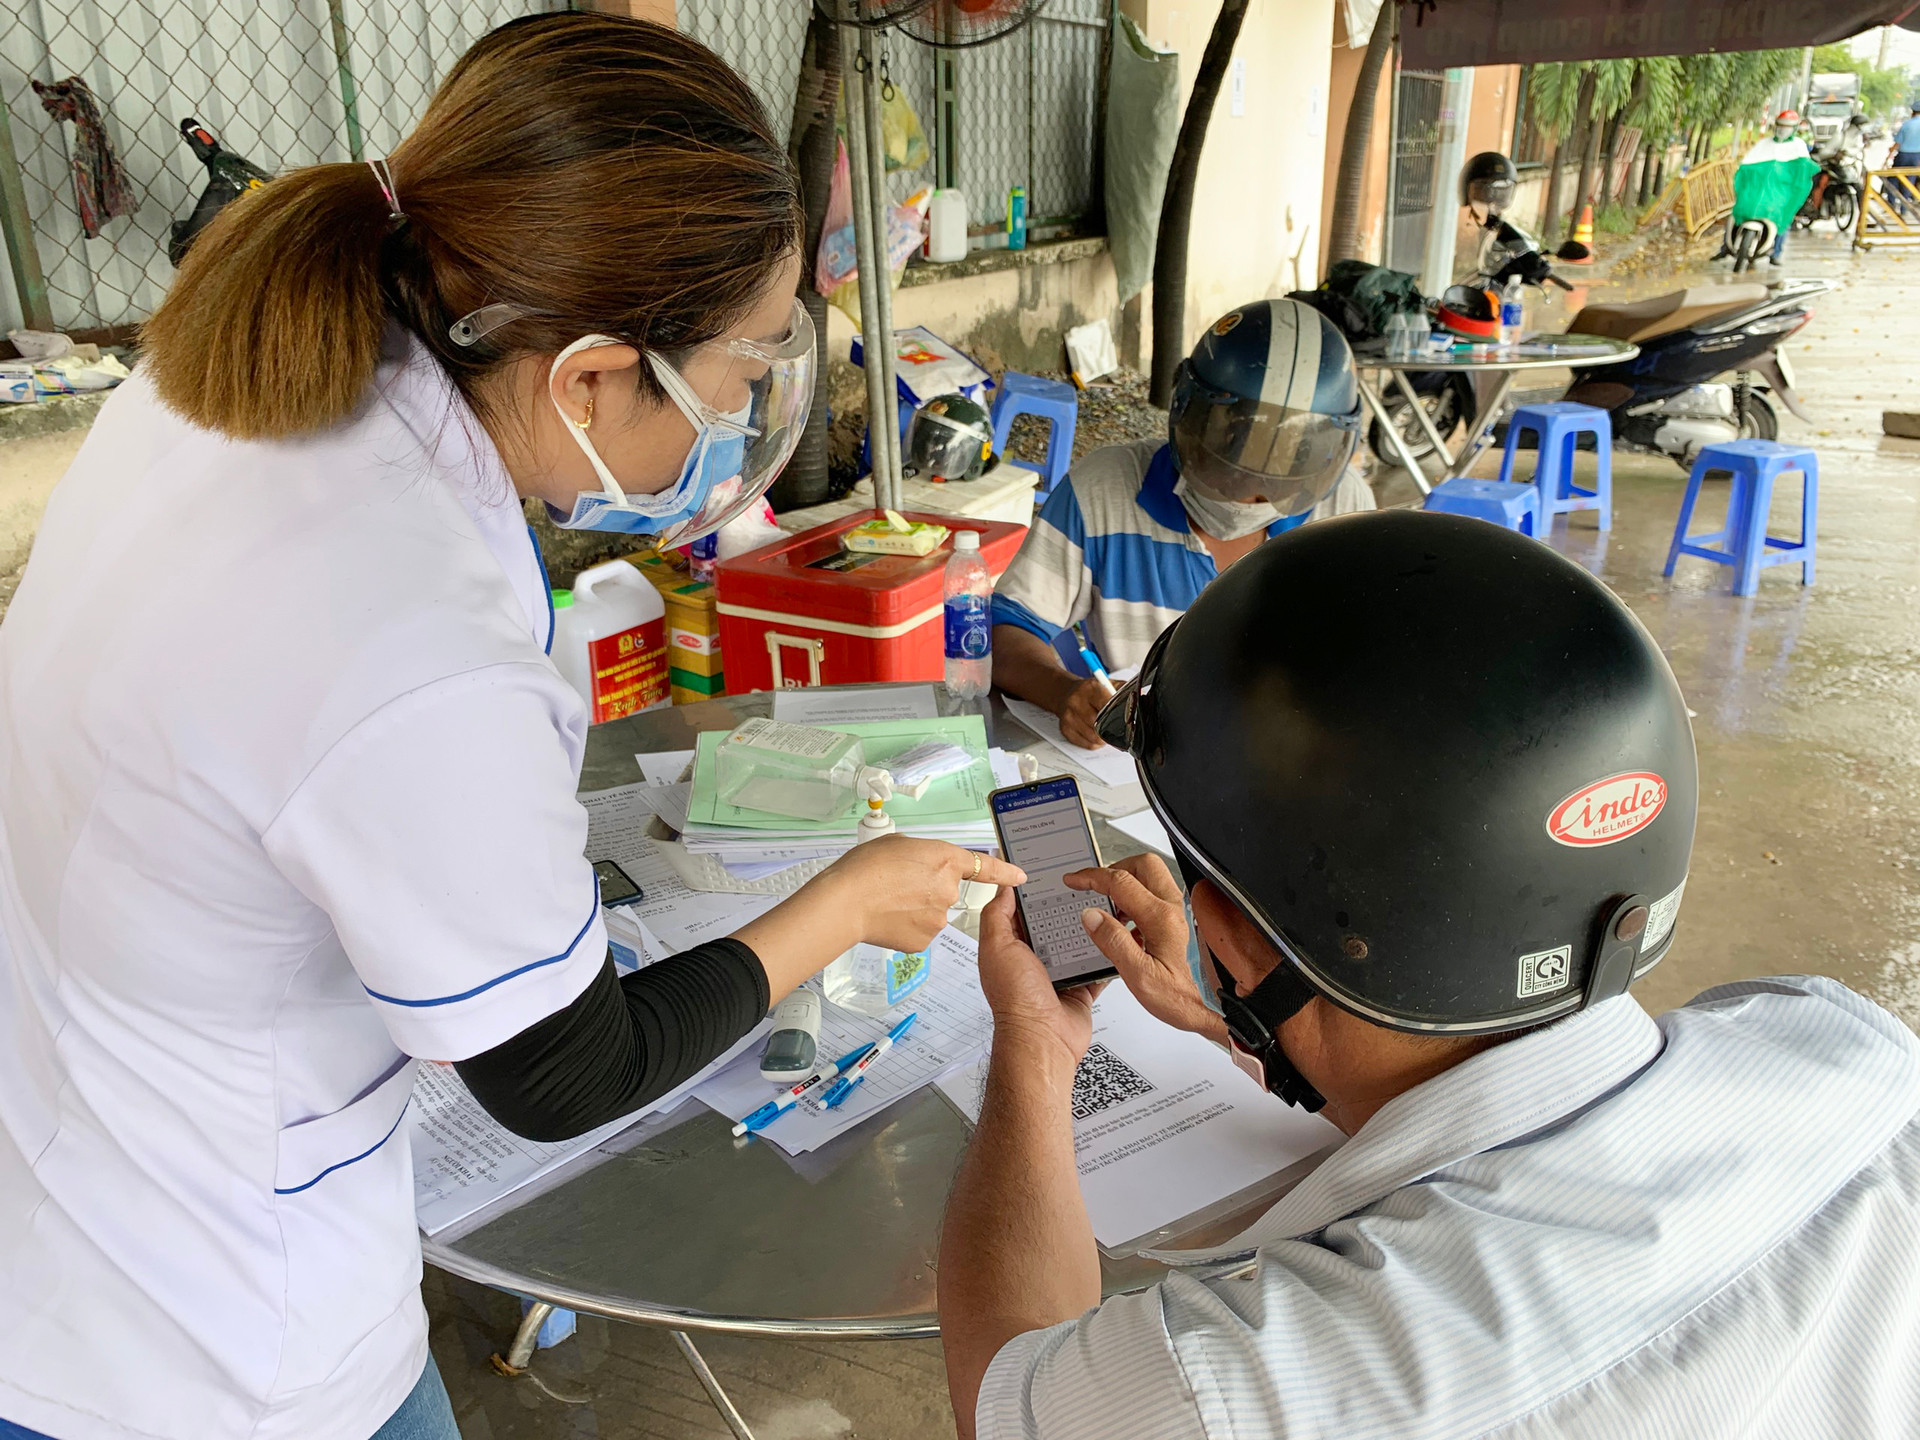 Chị Trần Thị Minh Ái, thành viên tại chốt trực phụ trách nhiệm vụ kiểm tra y tế tại chốt cầu Hóa An hướng dân người dân khai báo y tế.